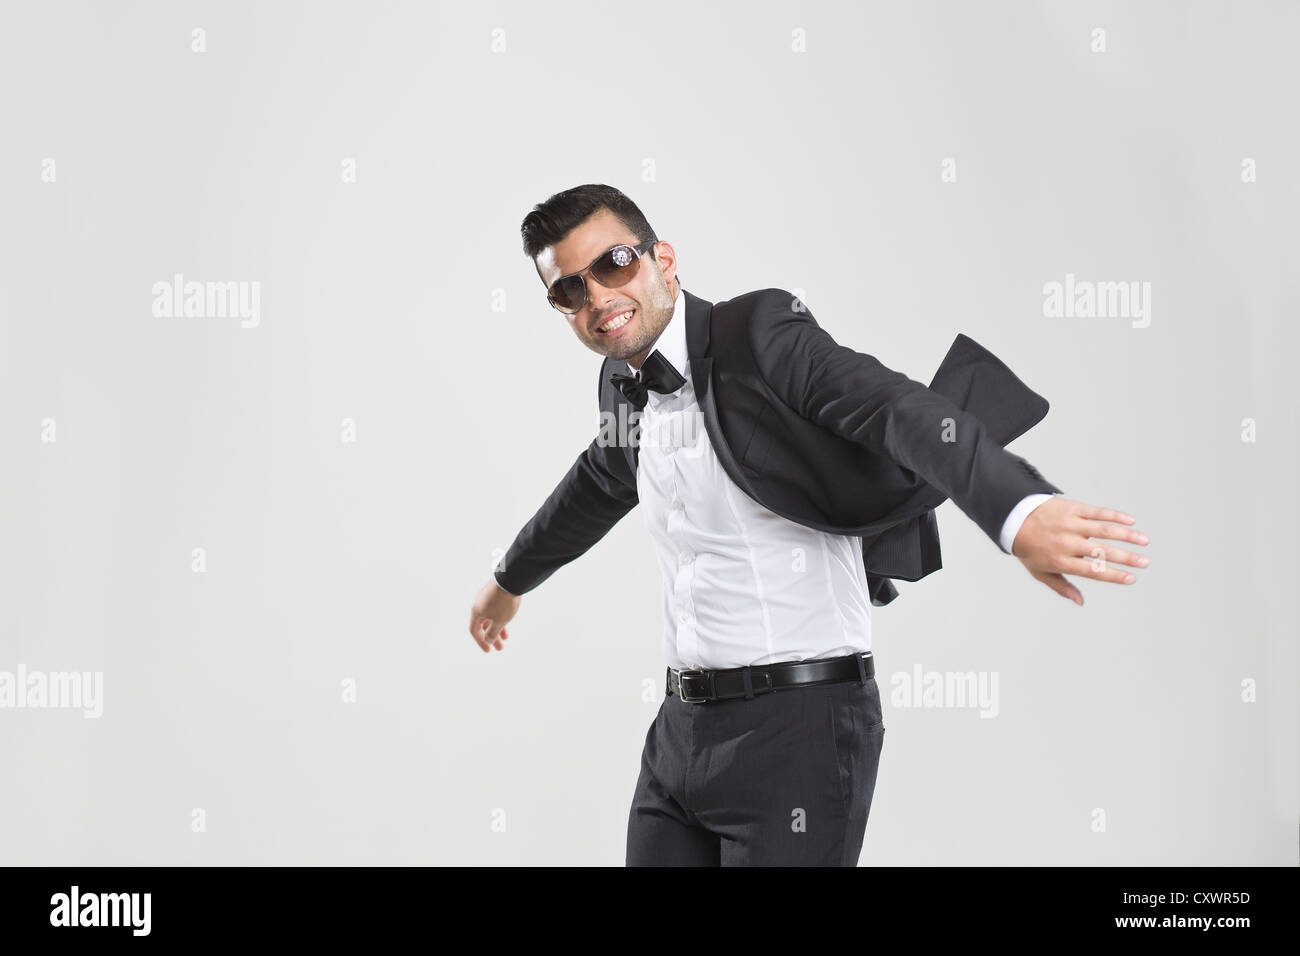 Lächelnd Mann im Smoking tanzen Stockfoto